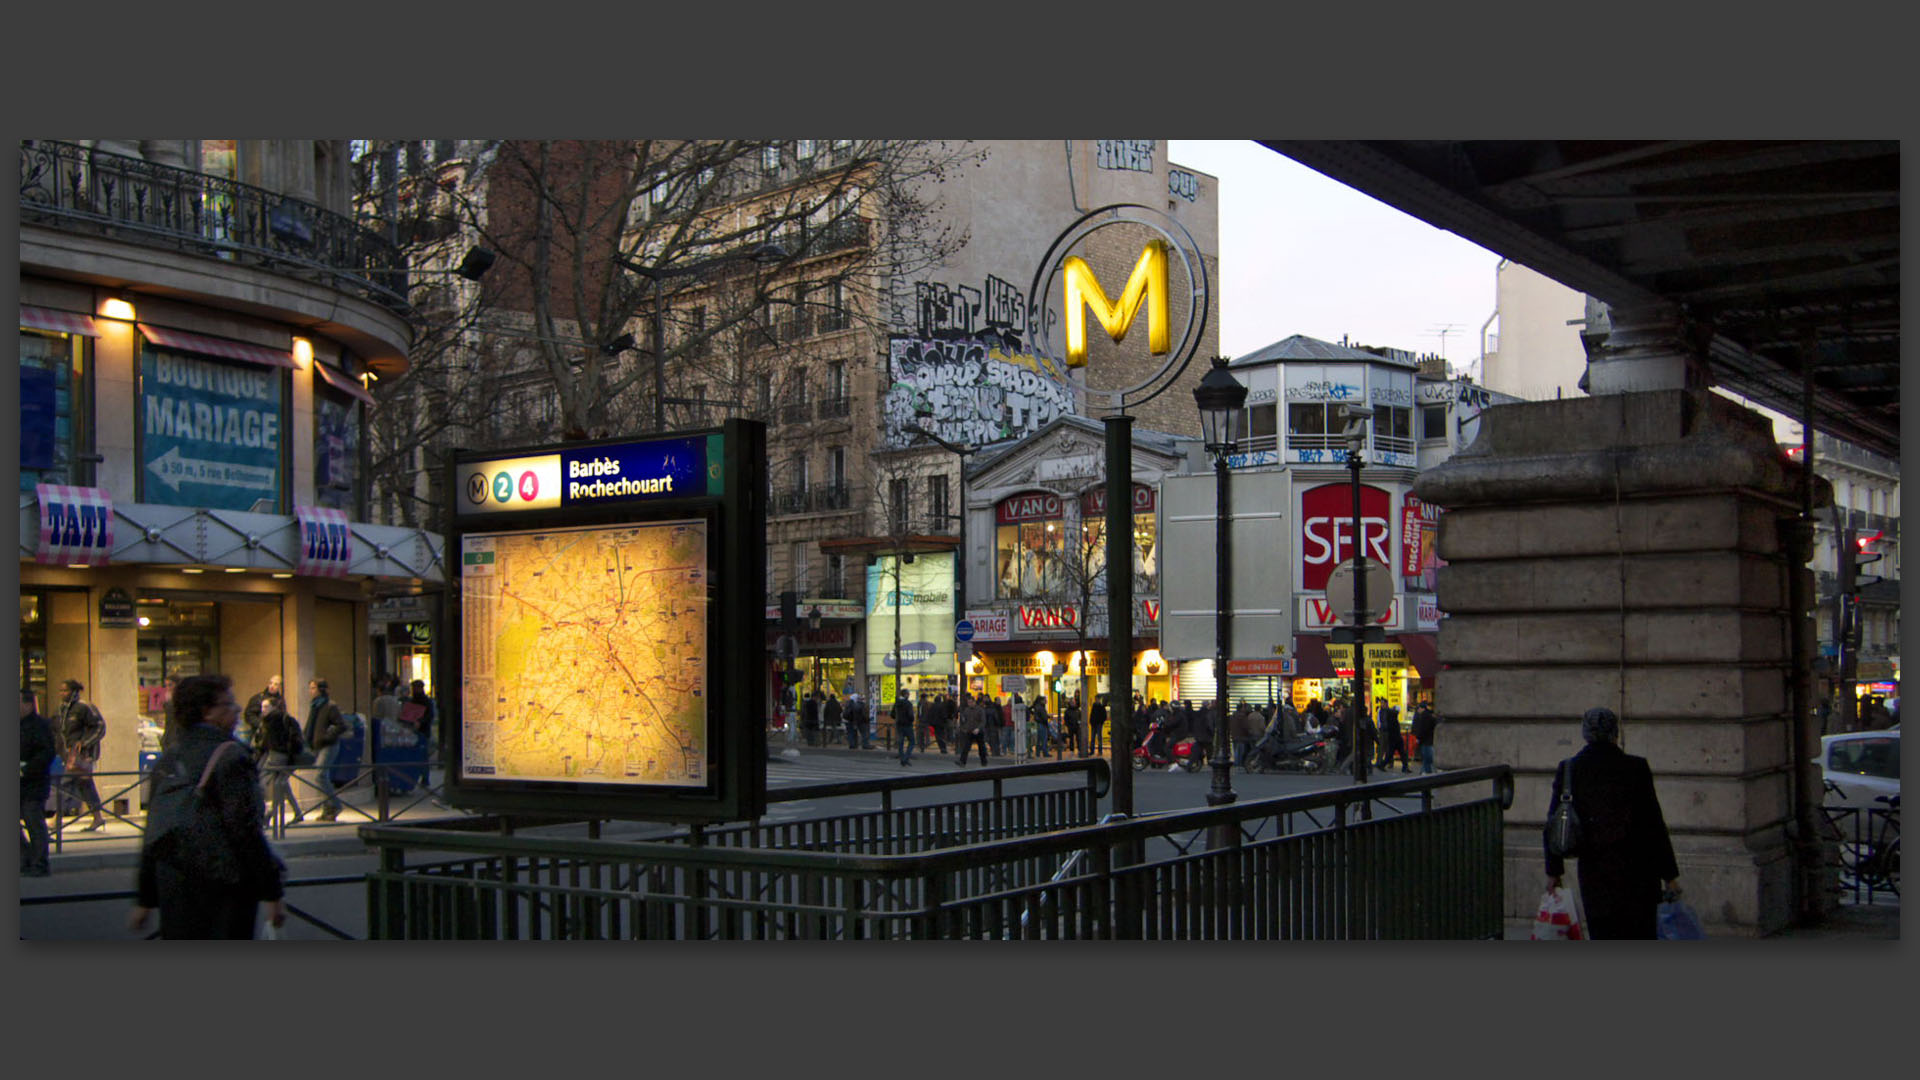 Station de métro Barbès-Rochechouart, bd de Rochechouart, à Paris.